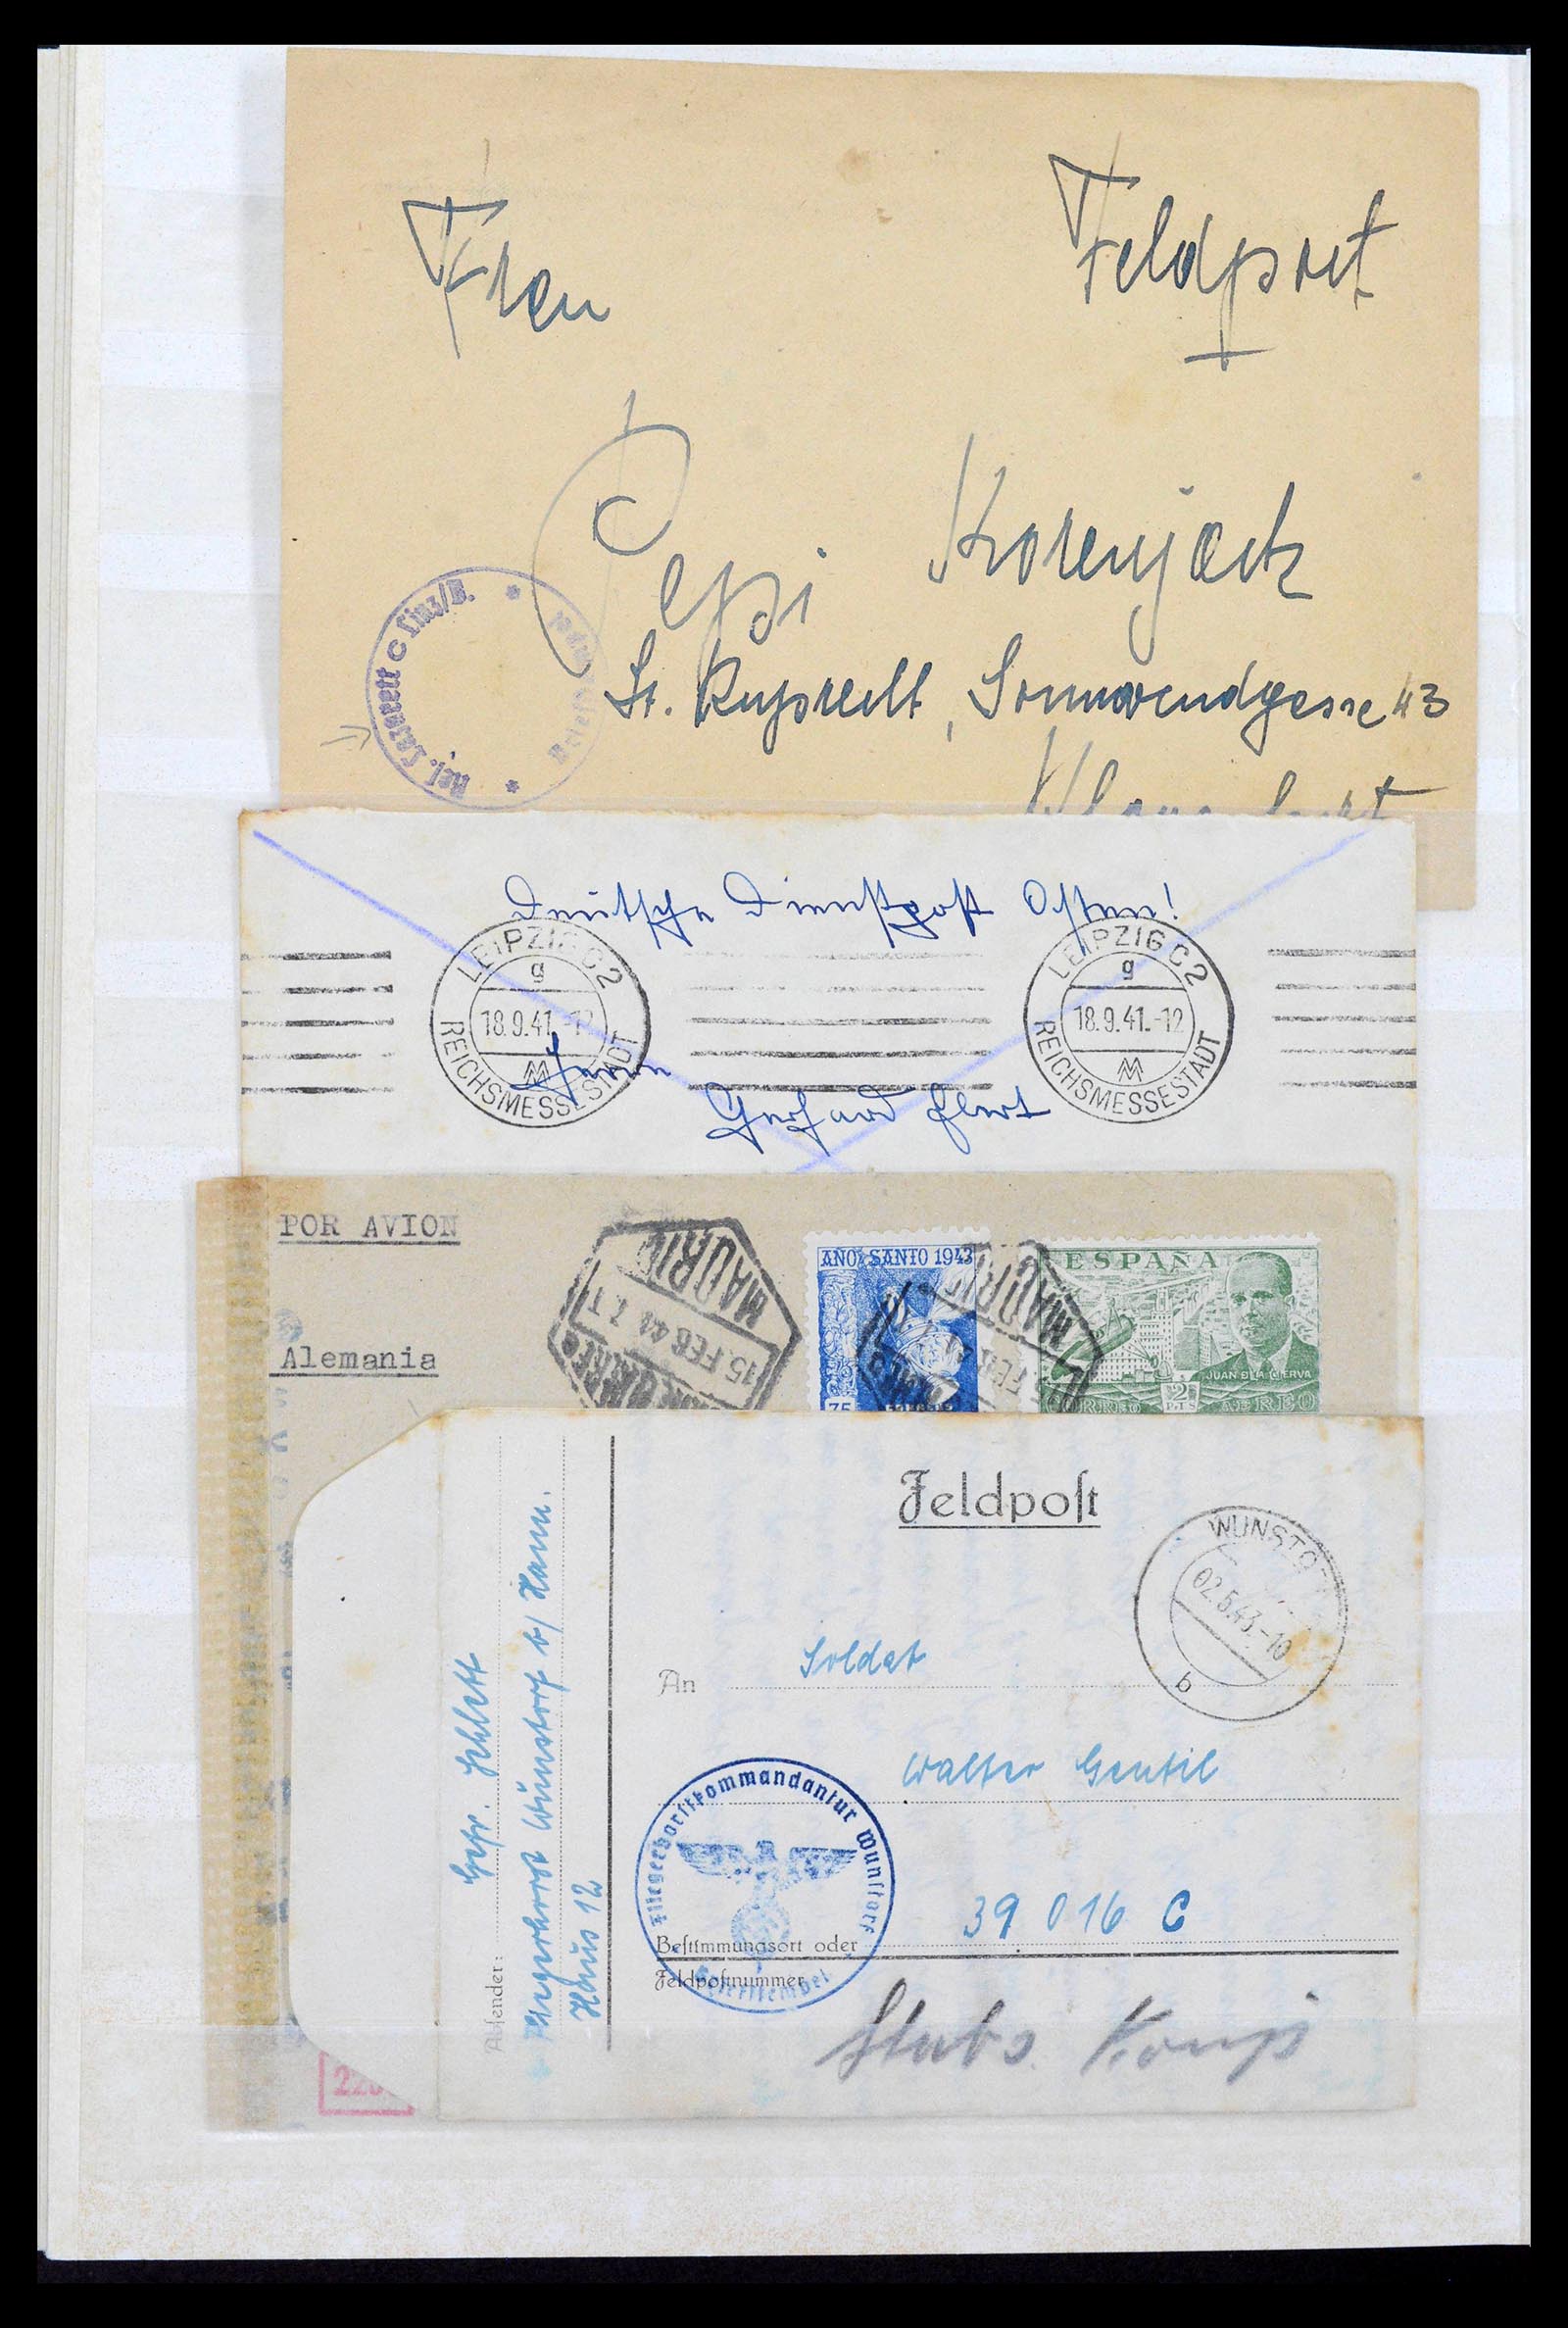 38865 0058 - Stamp collection 38865 German occupation 2nd worldwar 1939-1945.